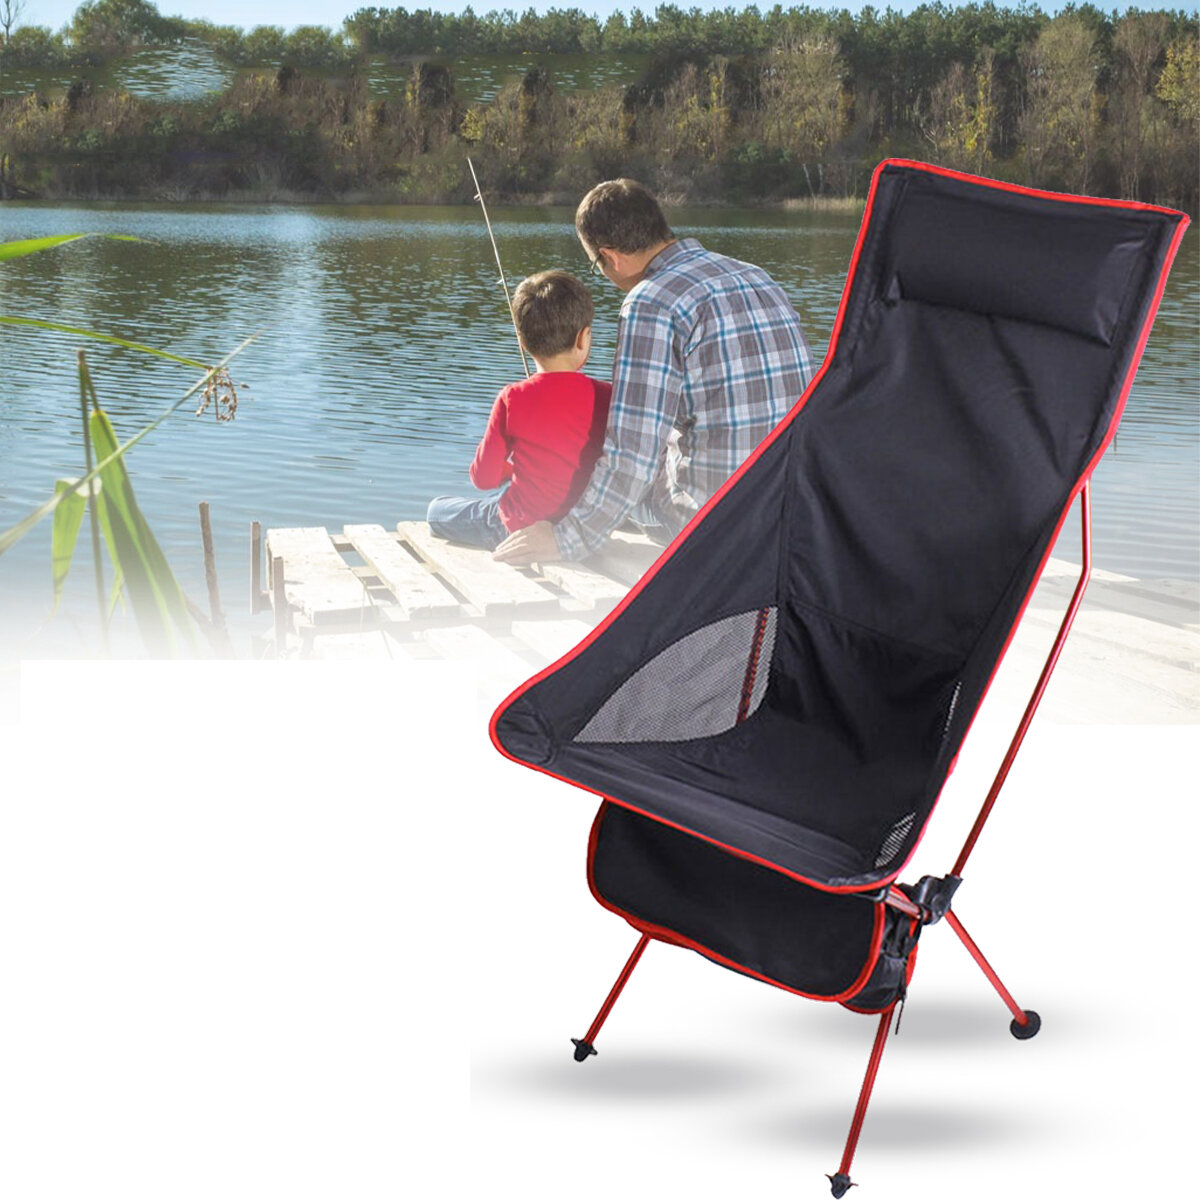 Ελαφρύς φορητός αναδιπλούμενος καρέκλα από κράμα αλουμινίου για υπαίθρια αναψυχή, παραλία και ταξίδια.